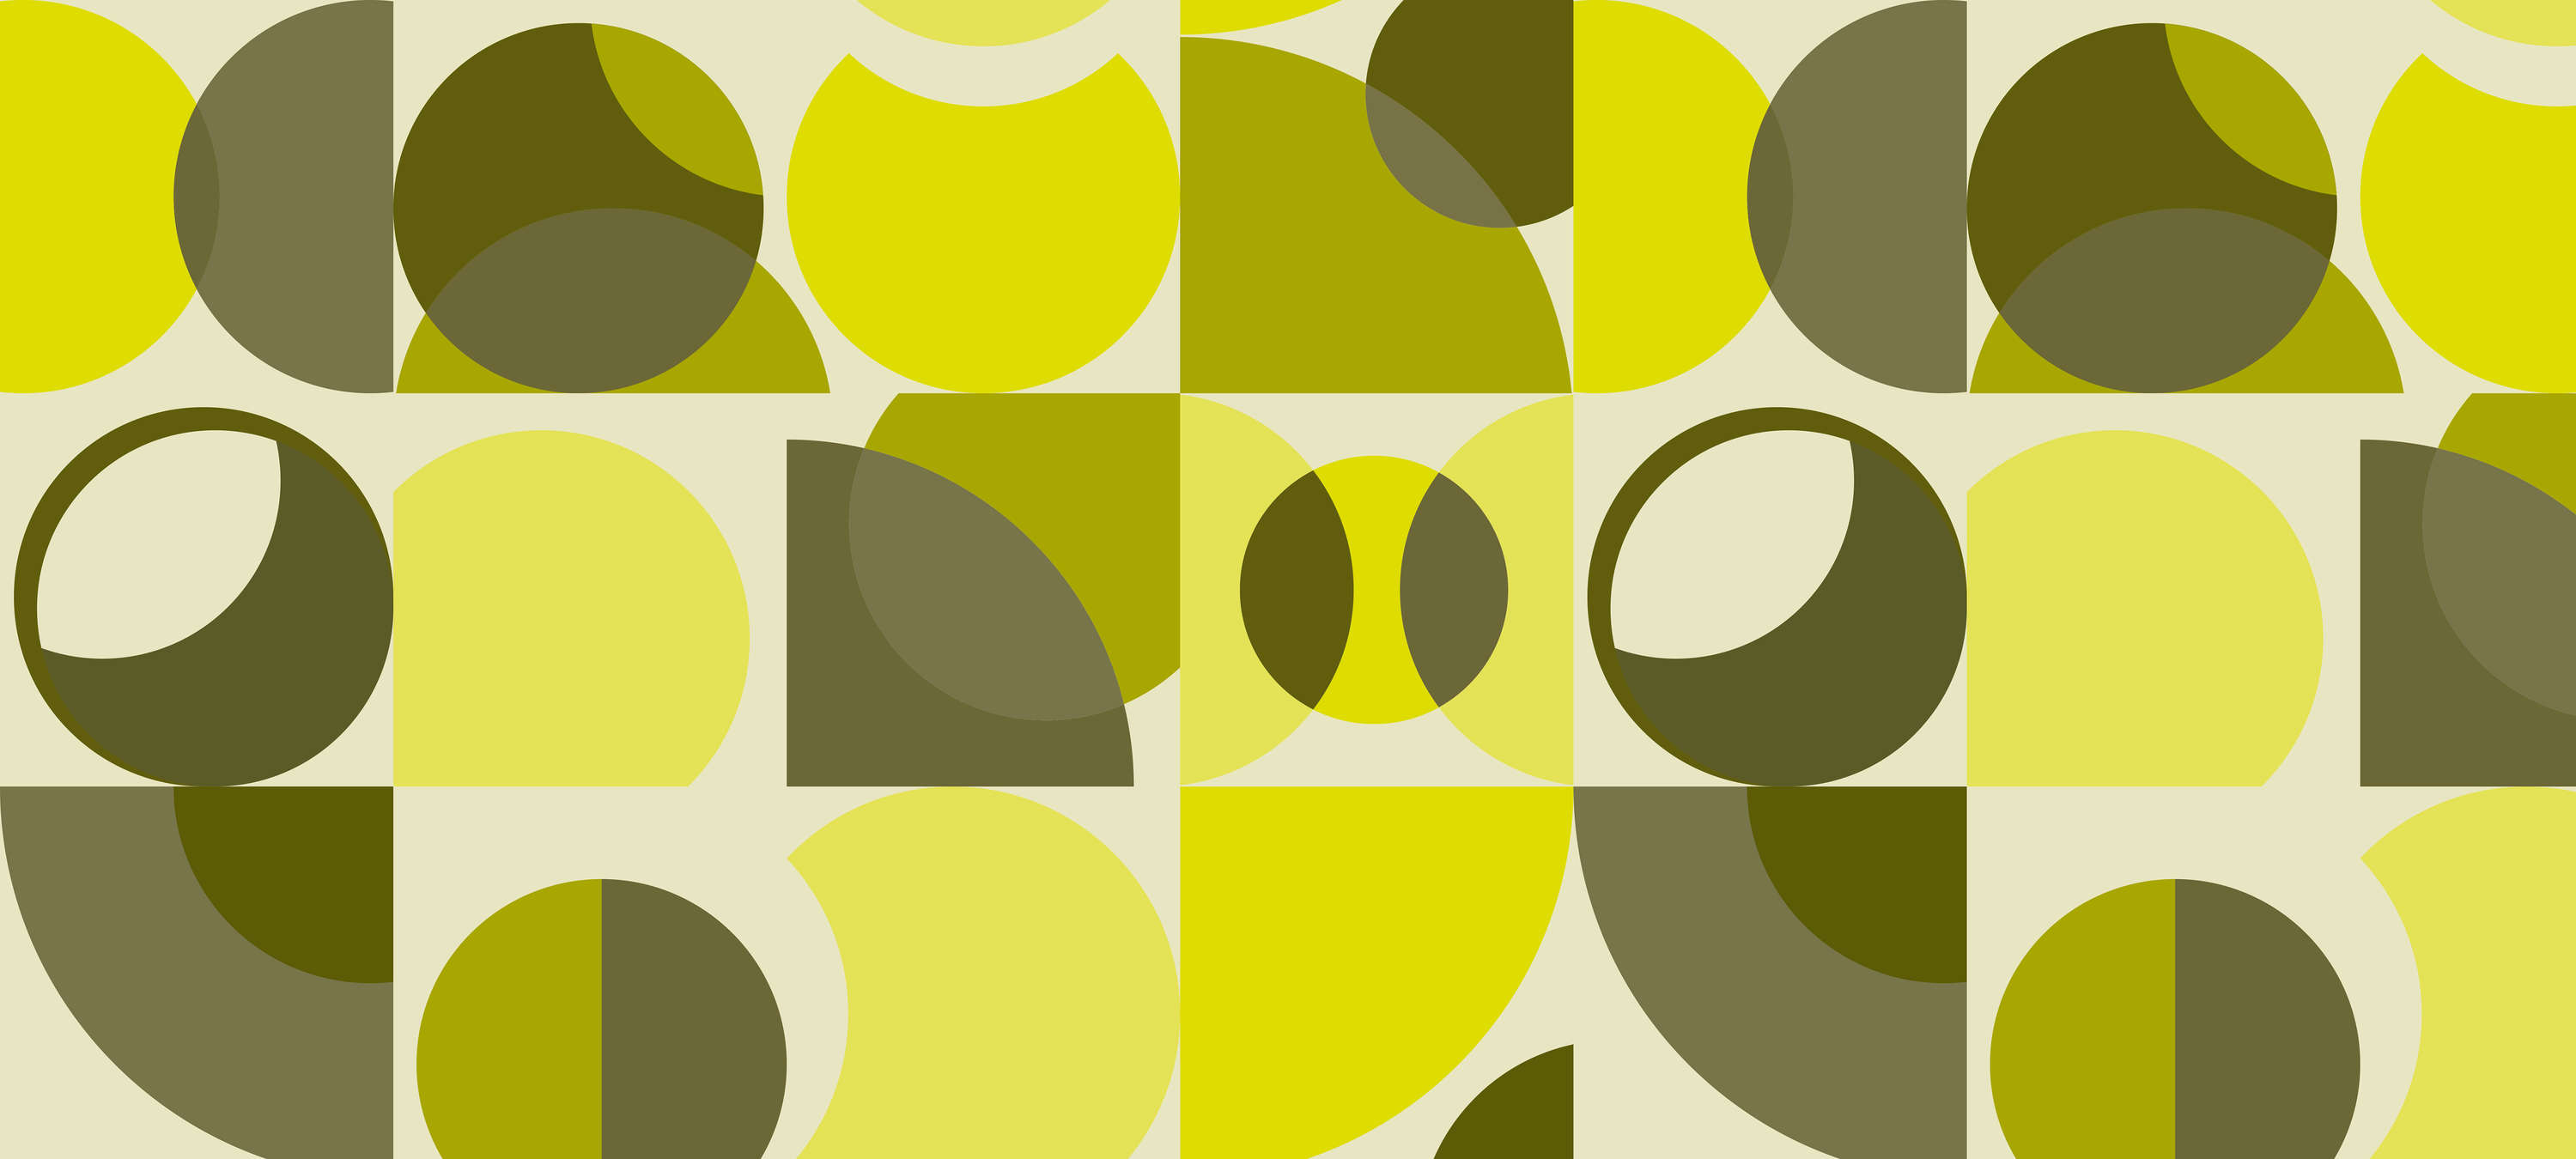             Carta da parati retrò con design geometrico - Giallo, verde, grigio
        